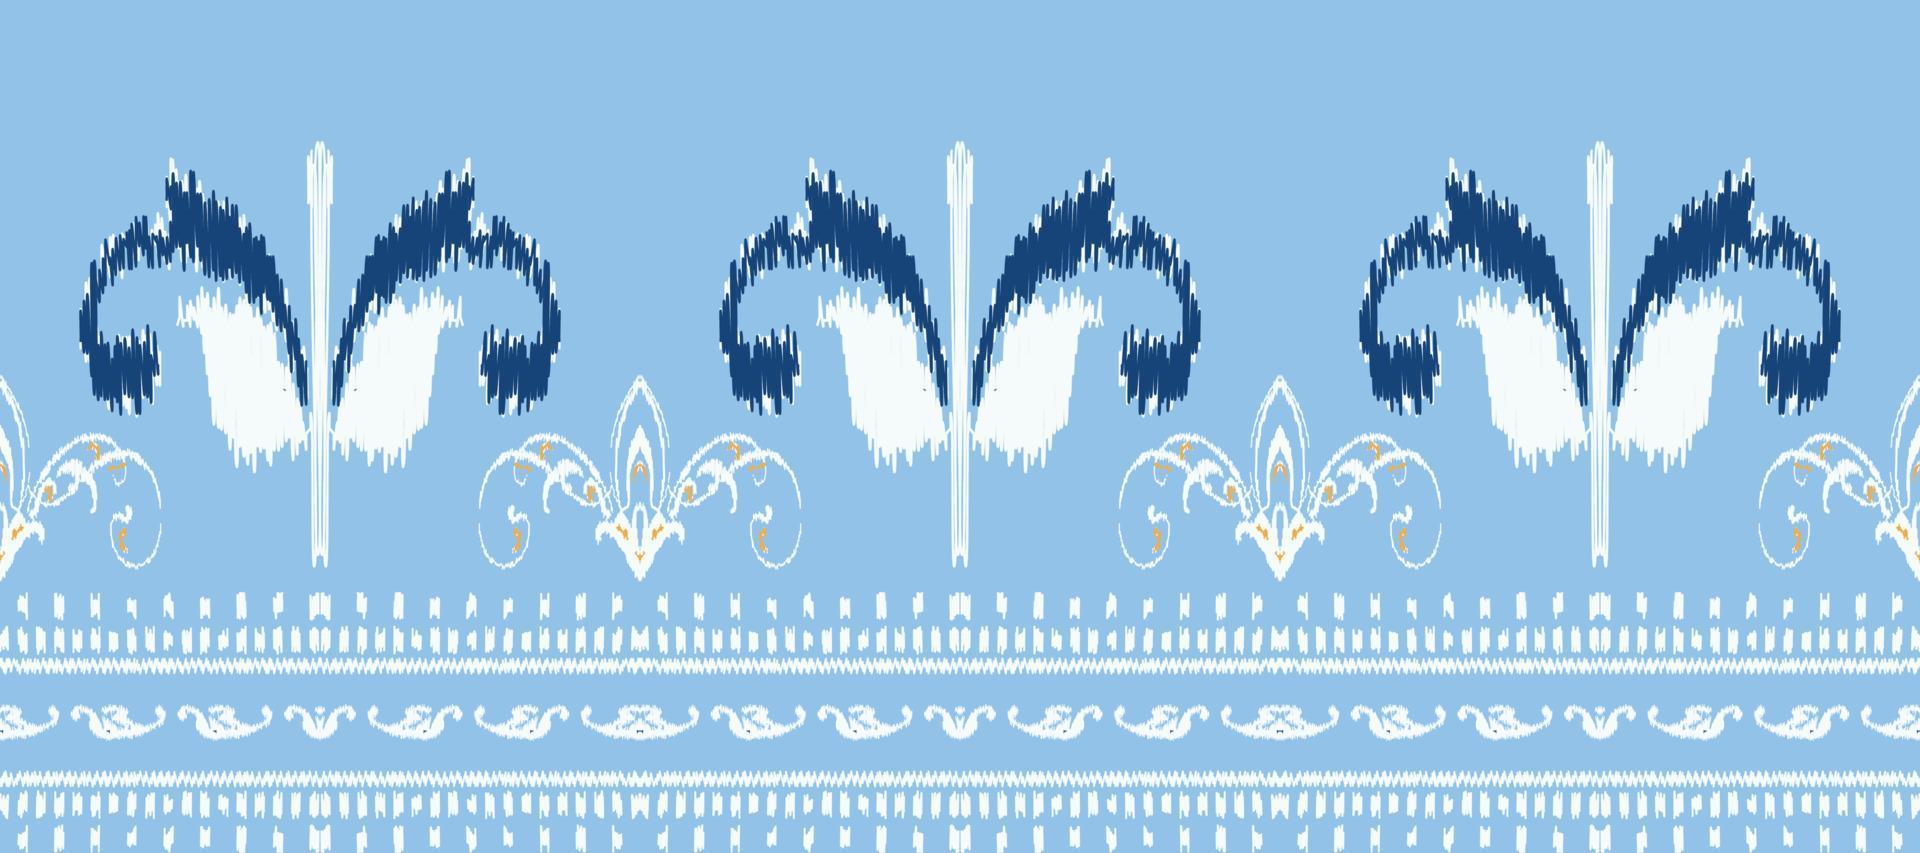 africano ikat paisley bordado. batik têxtil ikat tecido desatado padronizar digital vetor Projeto para impressão saree kurti Bornéu tecido fronteira ikkat dupatta